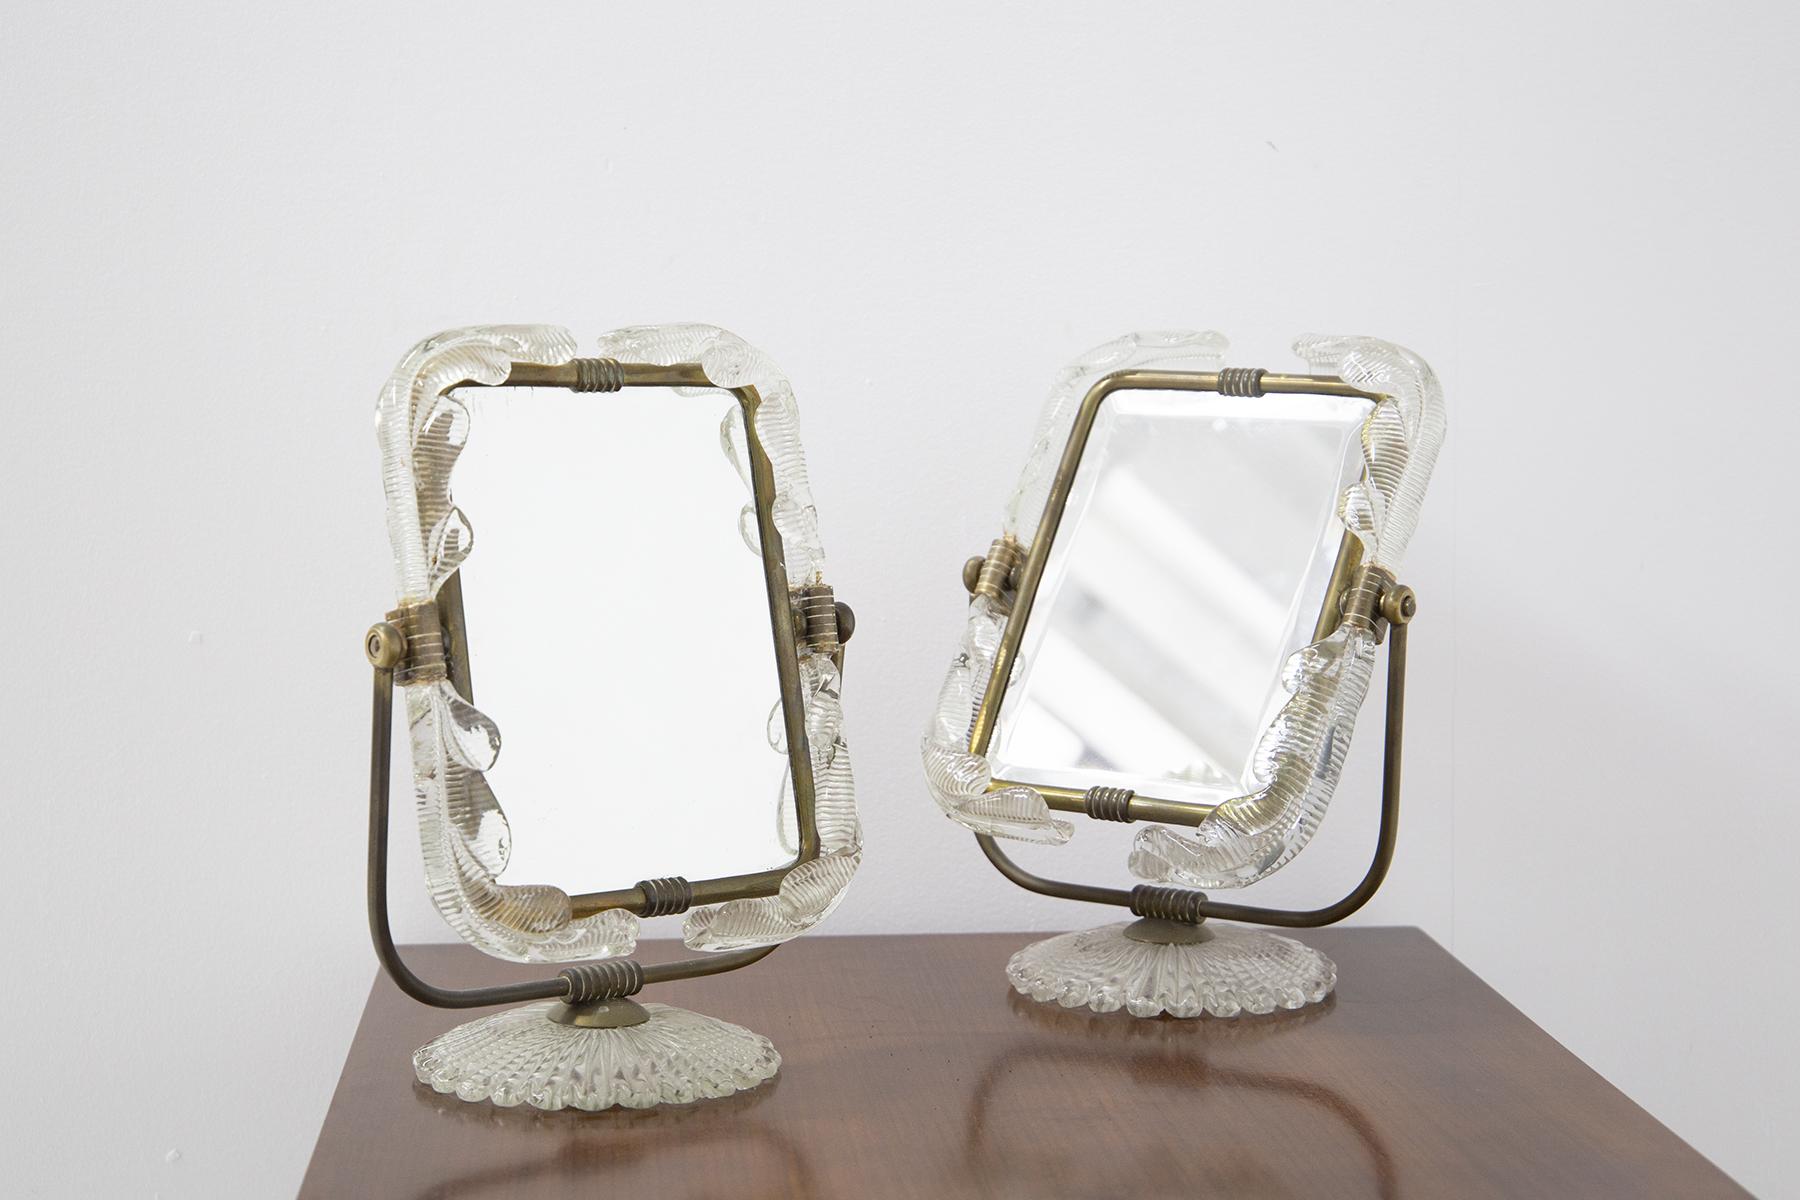 Spectaculaire paire de miroirs de table italiens des années 1950 fabriqués par Barovier et Toso. La paire de miroirs peut également servir de miroir de courtoisie pour un bureau de maquillage. Les miroirs ont également une double fonction : si l'on